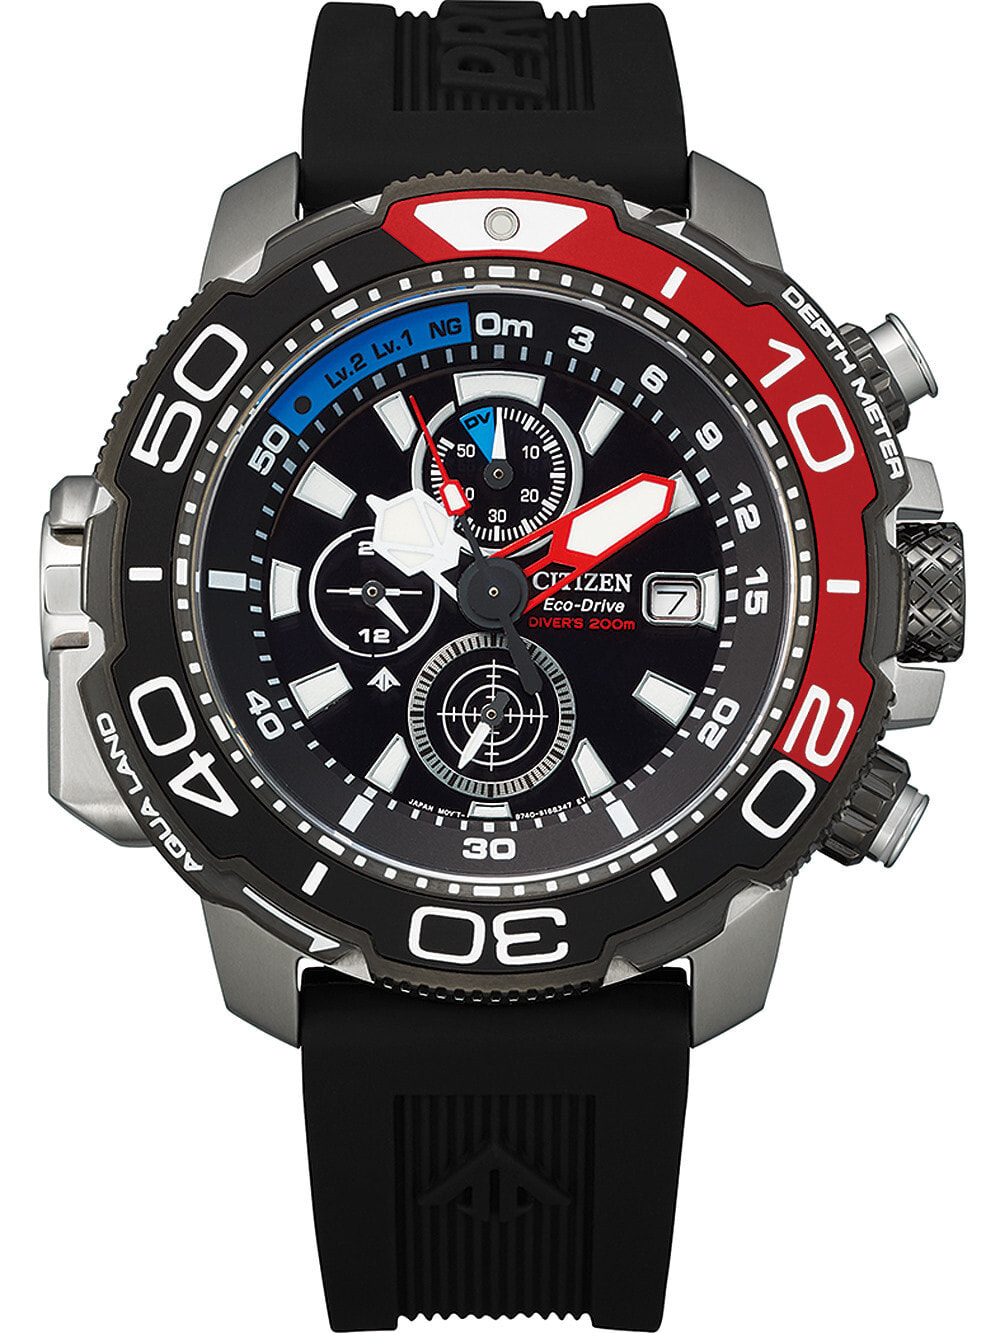 Мужские наручные часы с черным силиконовым ремешком Citizen BJ2167-03E Eco-Drive Promaster Marine diver 47mm 20ATM